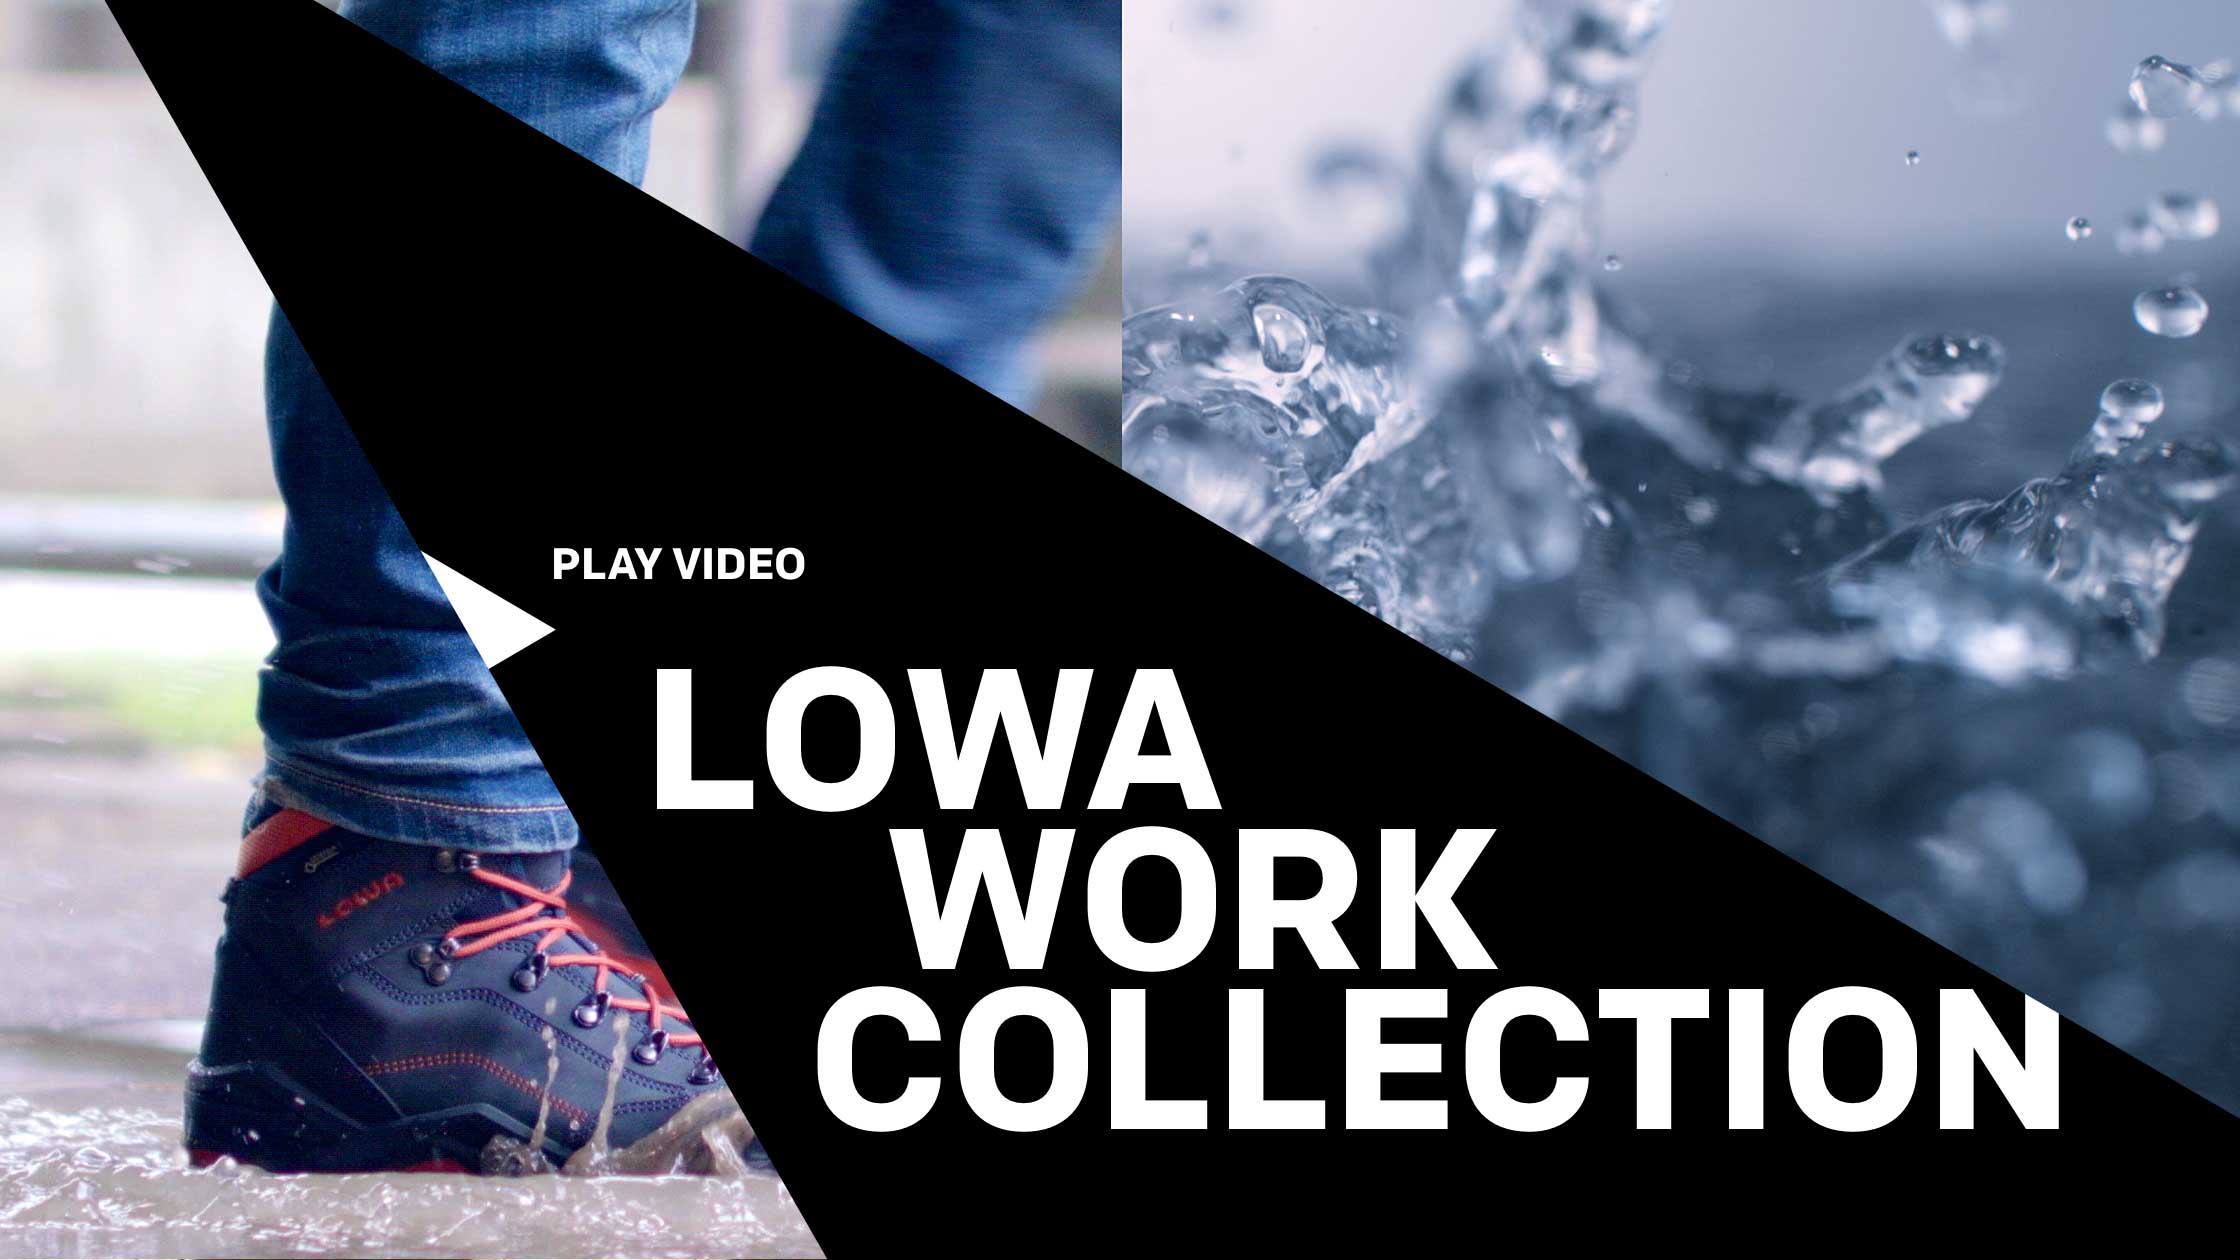 Der Werbespot für die Lowa Work Collection zeigt Lowas Arbeitsschuhe im industriellen Umfeld und featured ihre wasserdichte Gore-Tex Membran.